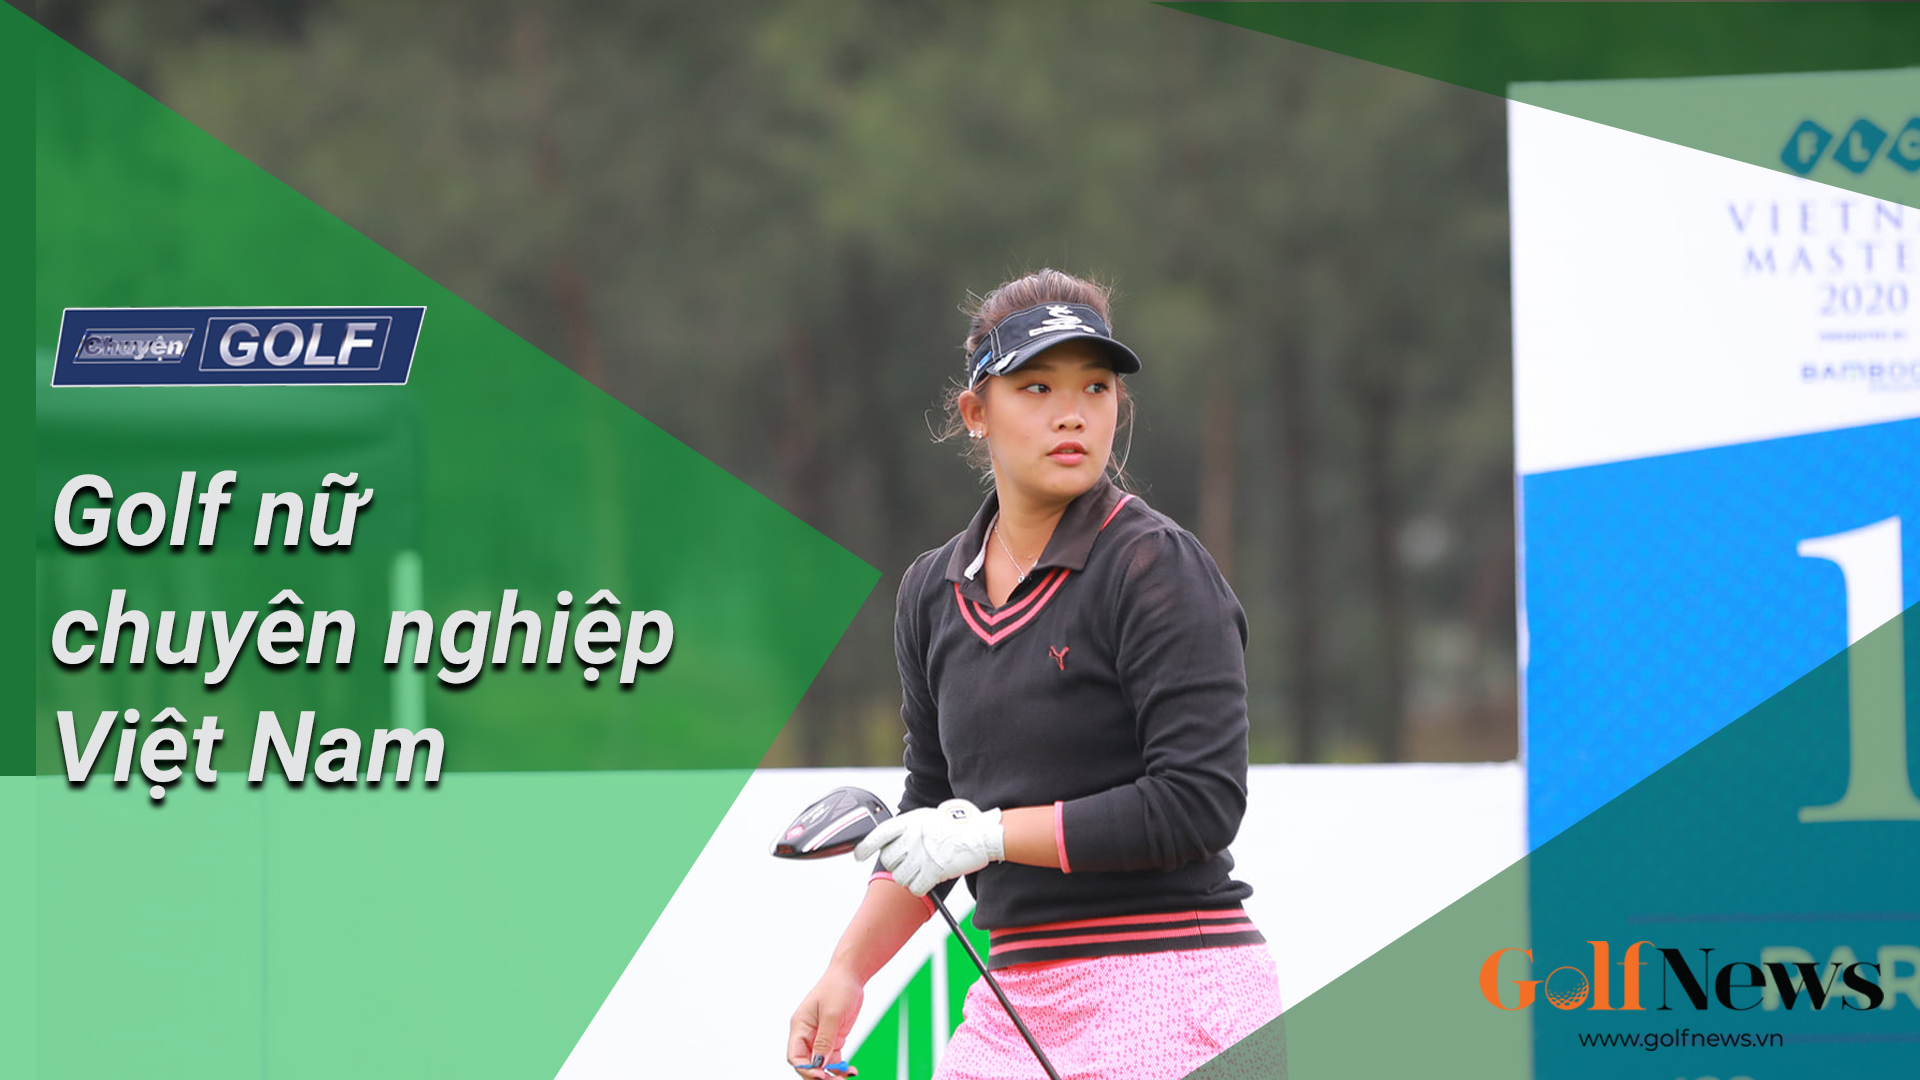 Chuyện Golf: Gian nan Golf nữ chuyên nghiệp Việt Nam